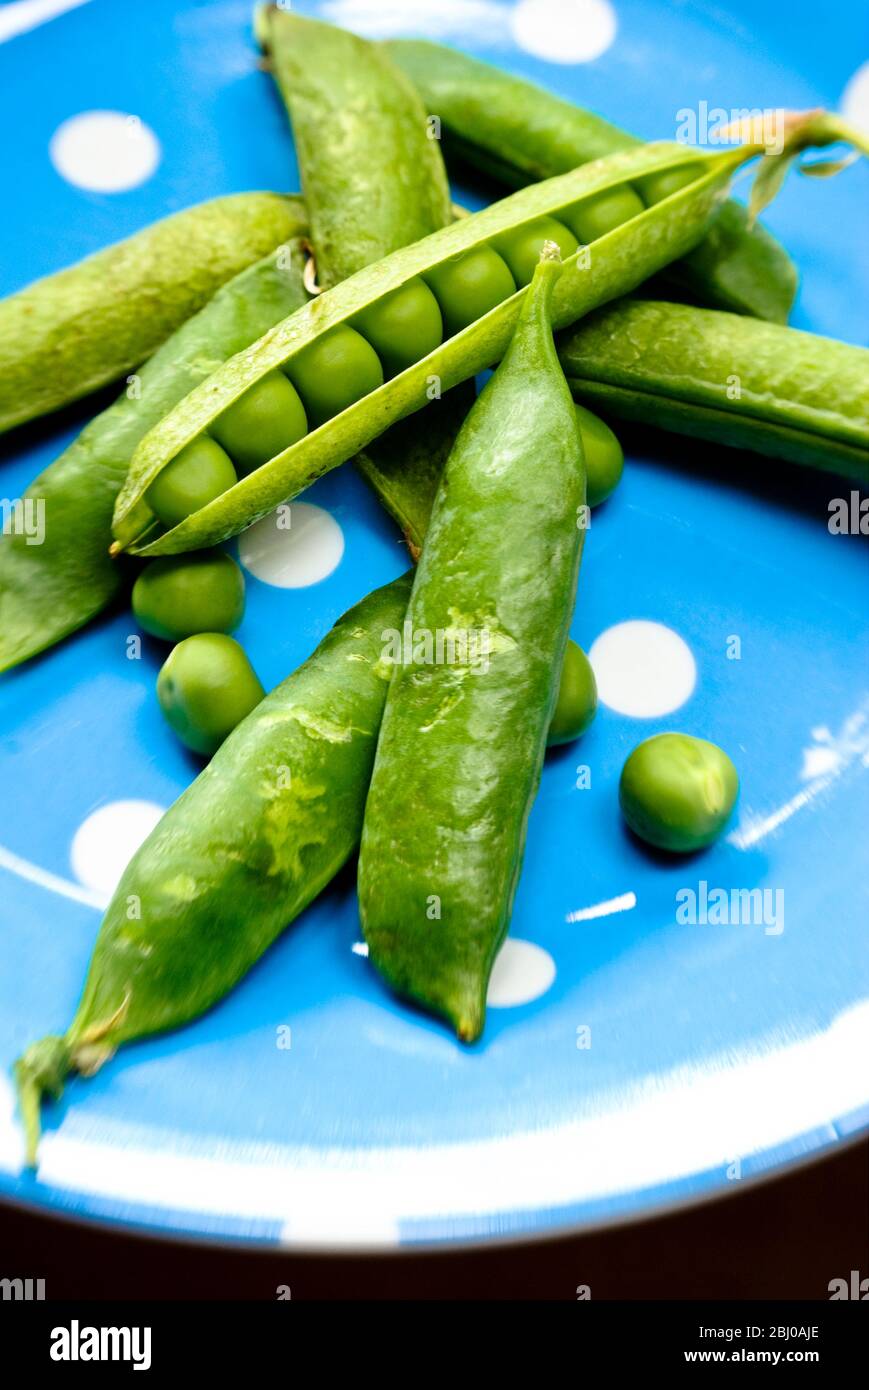 Frische Gartenerbsen in ihren Schoten auf blau gepunkteten Teller - Stockfoto